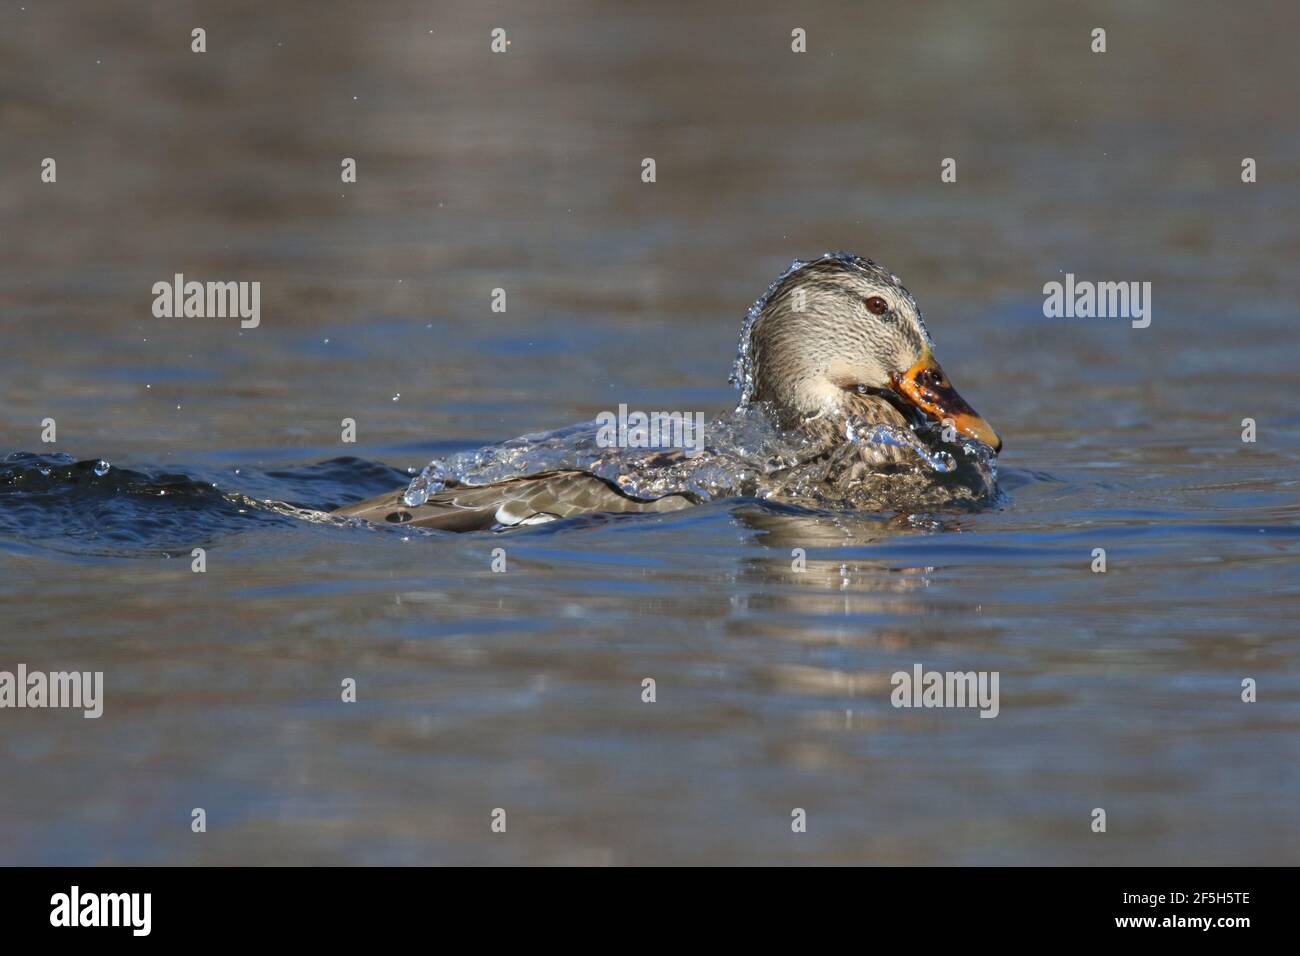 Acqua che cade dalla parte posteriore di un anatra di mallard Anas platyryhnchos come si affaccia su un lago in inverno Foto Stock